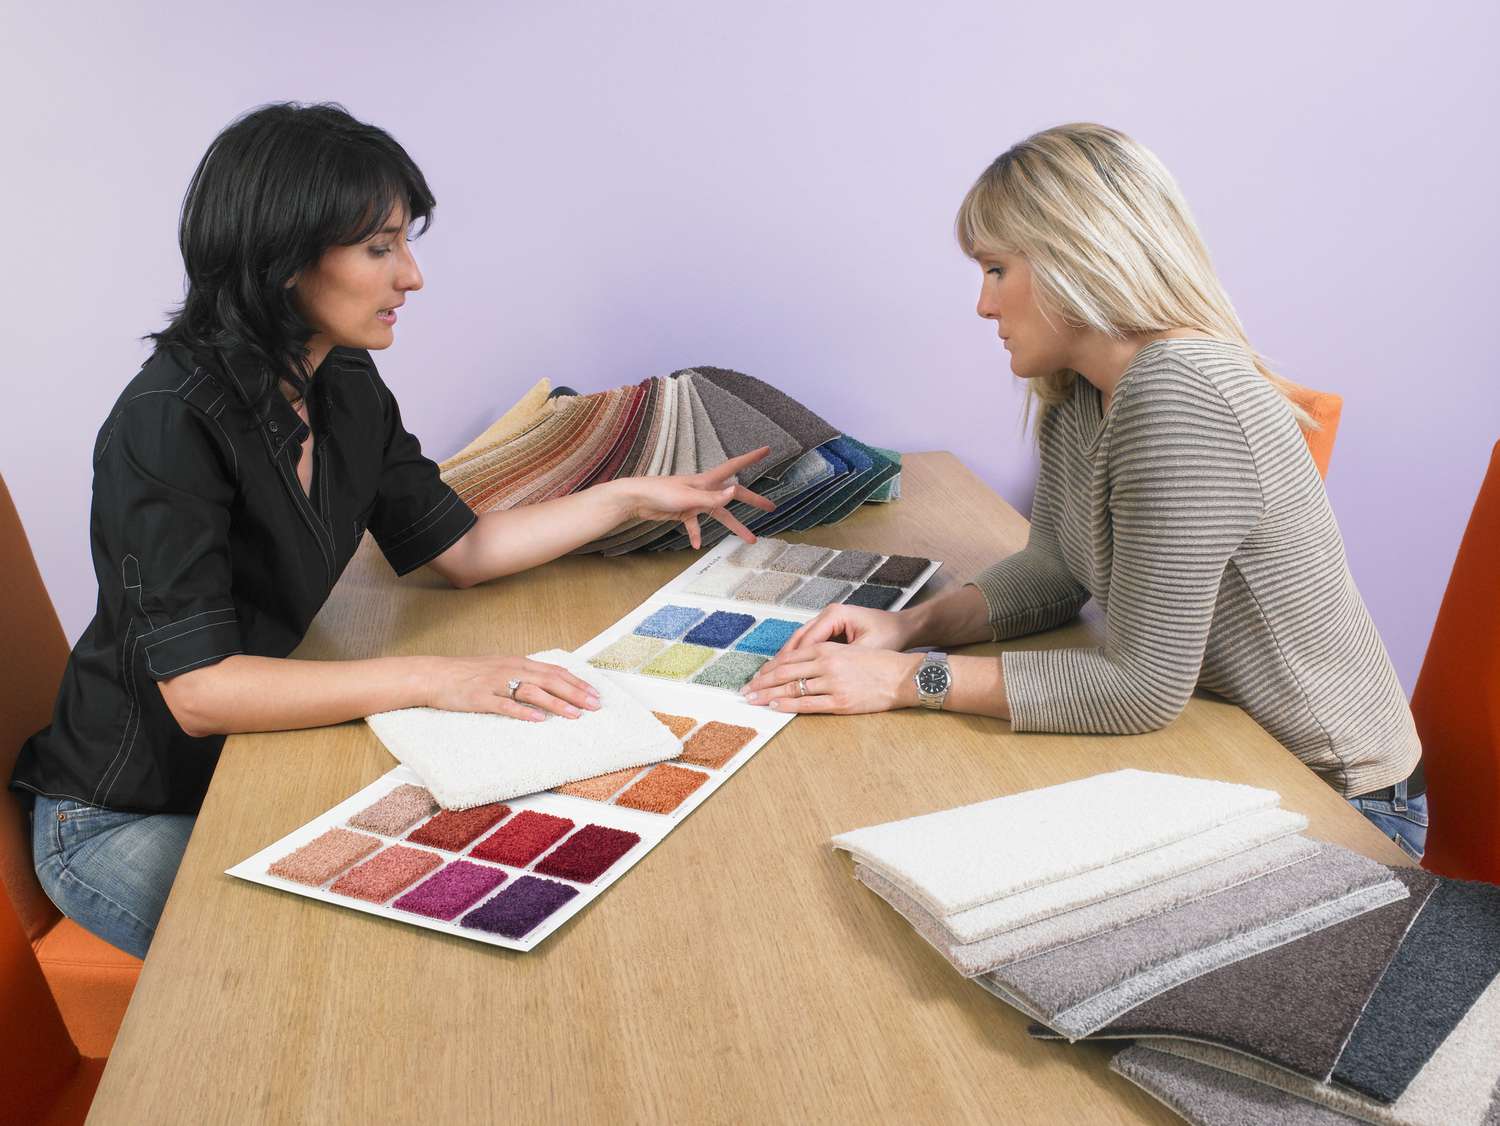 Designer showing carpet samples to client.